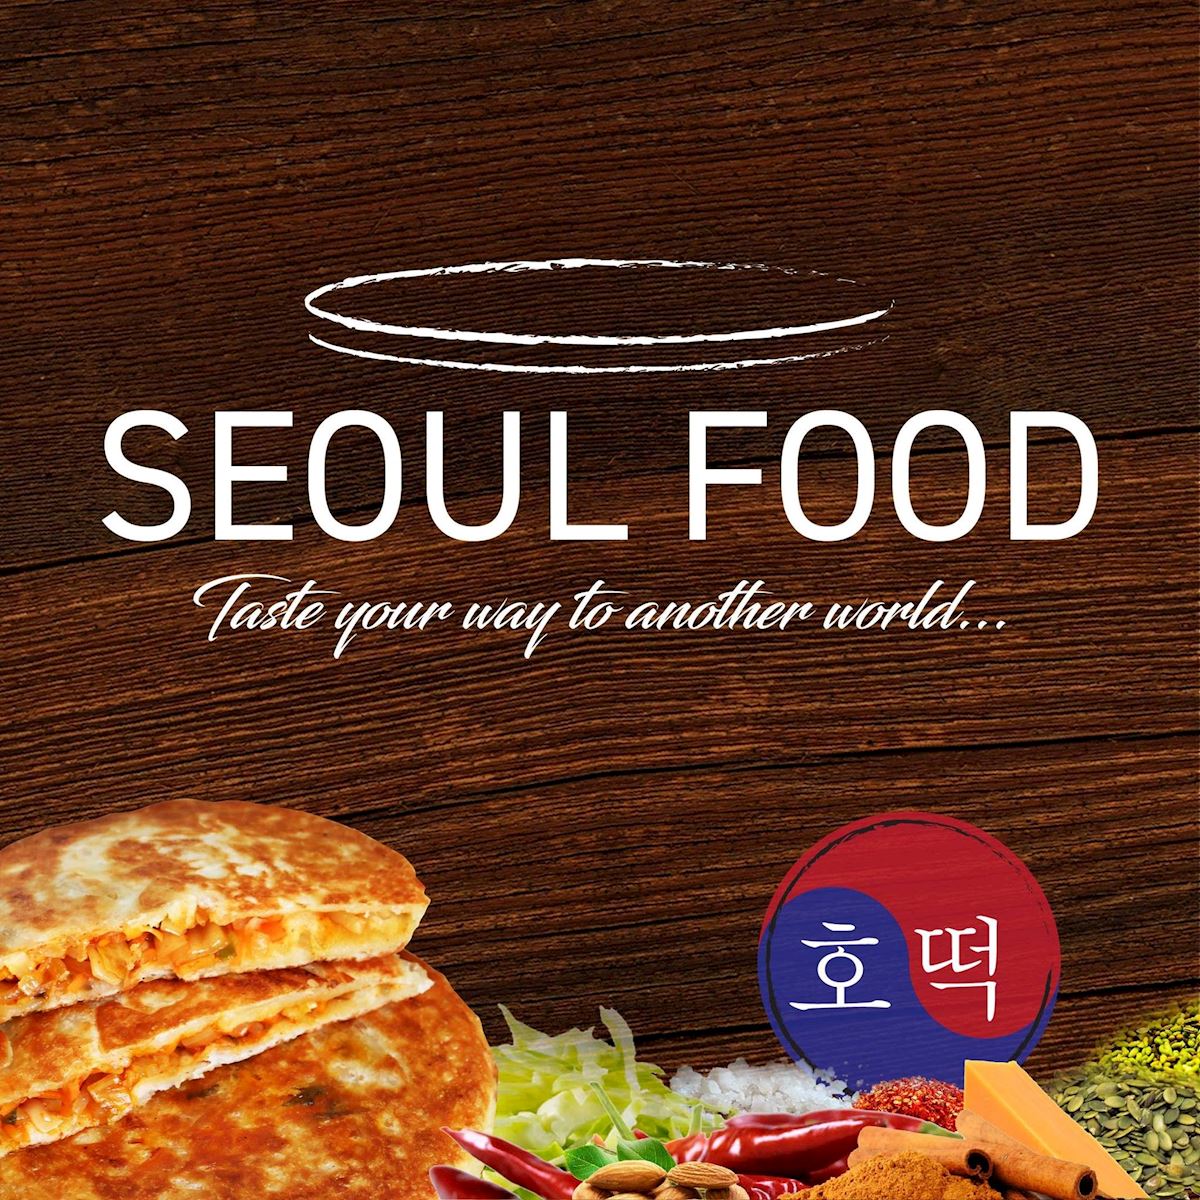 Seoul Food